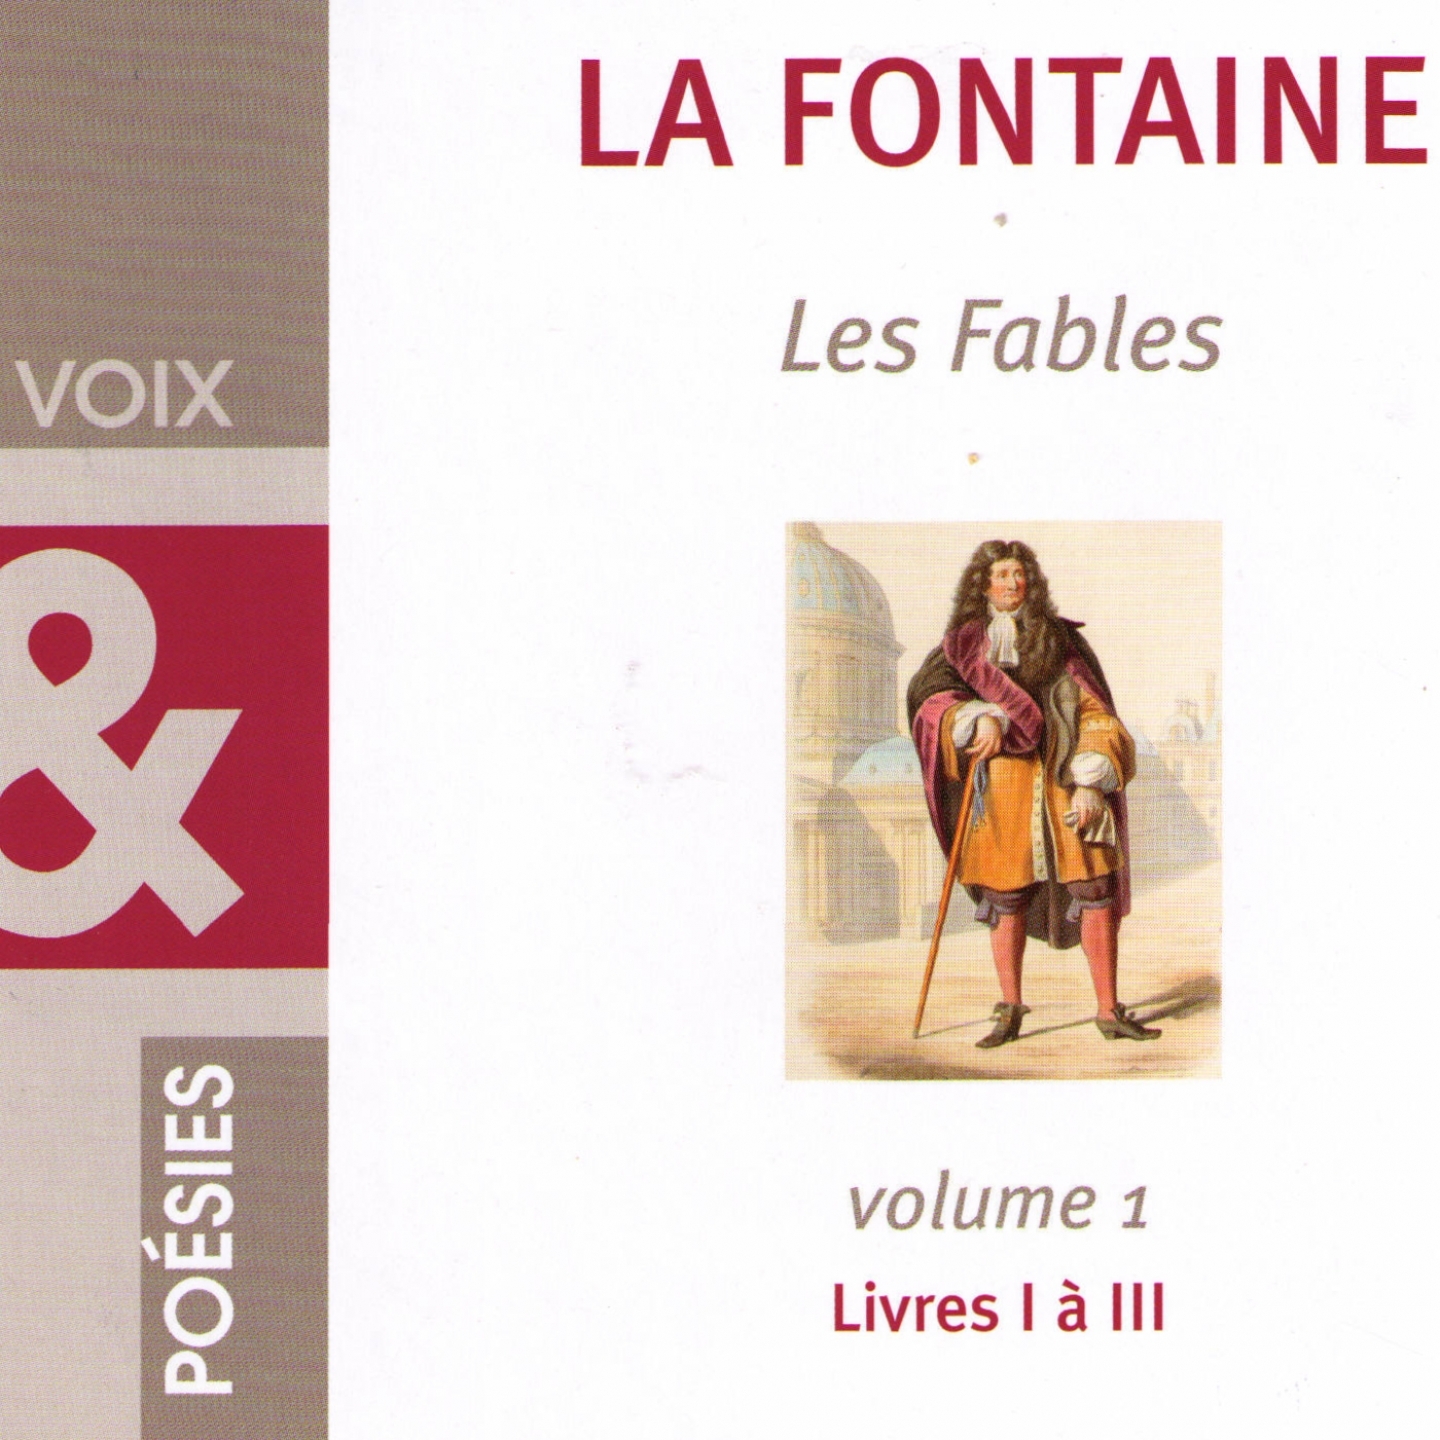 Les Fables de La Fontaine, vol. 1 Livres I a III